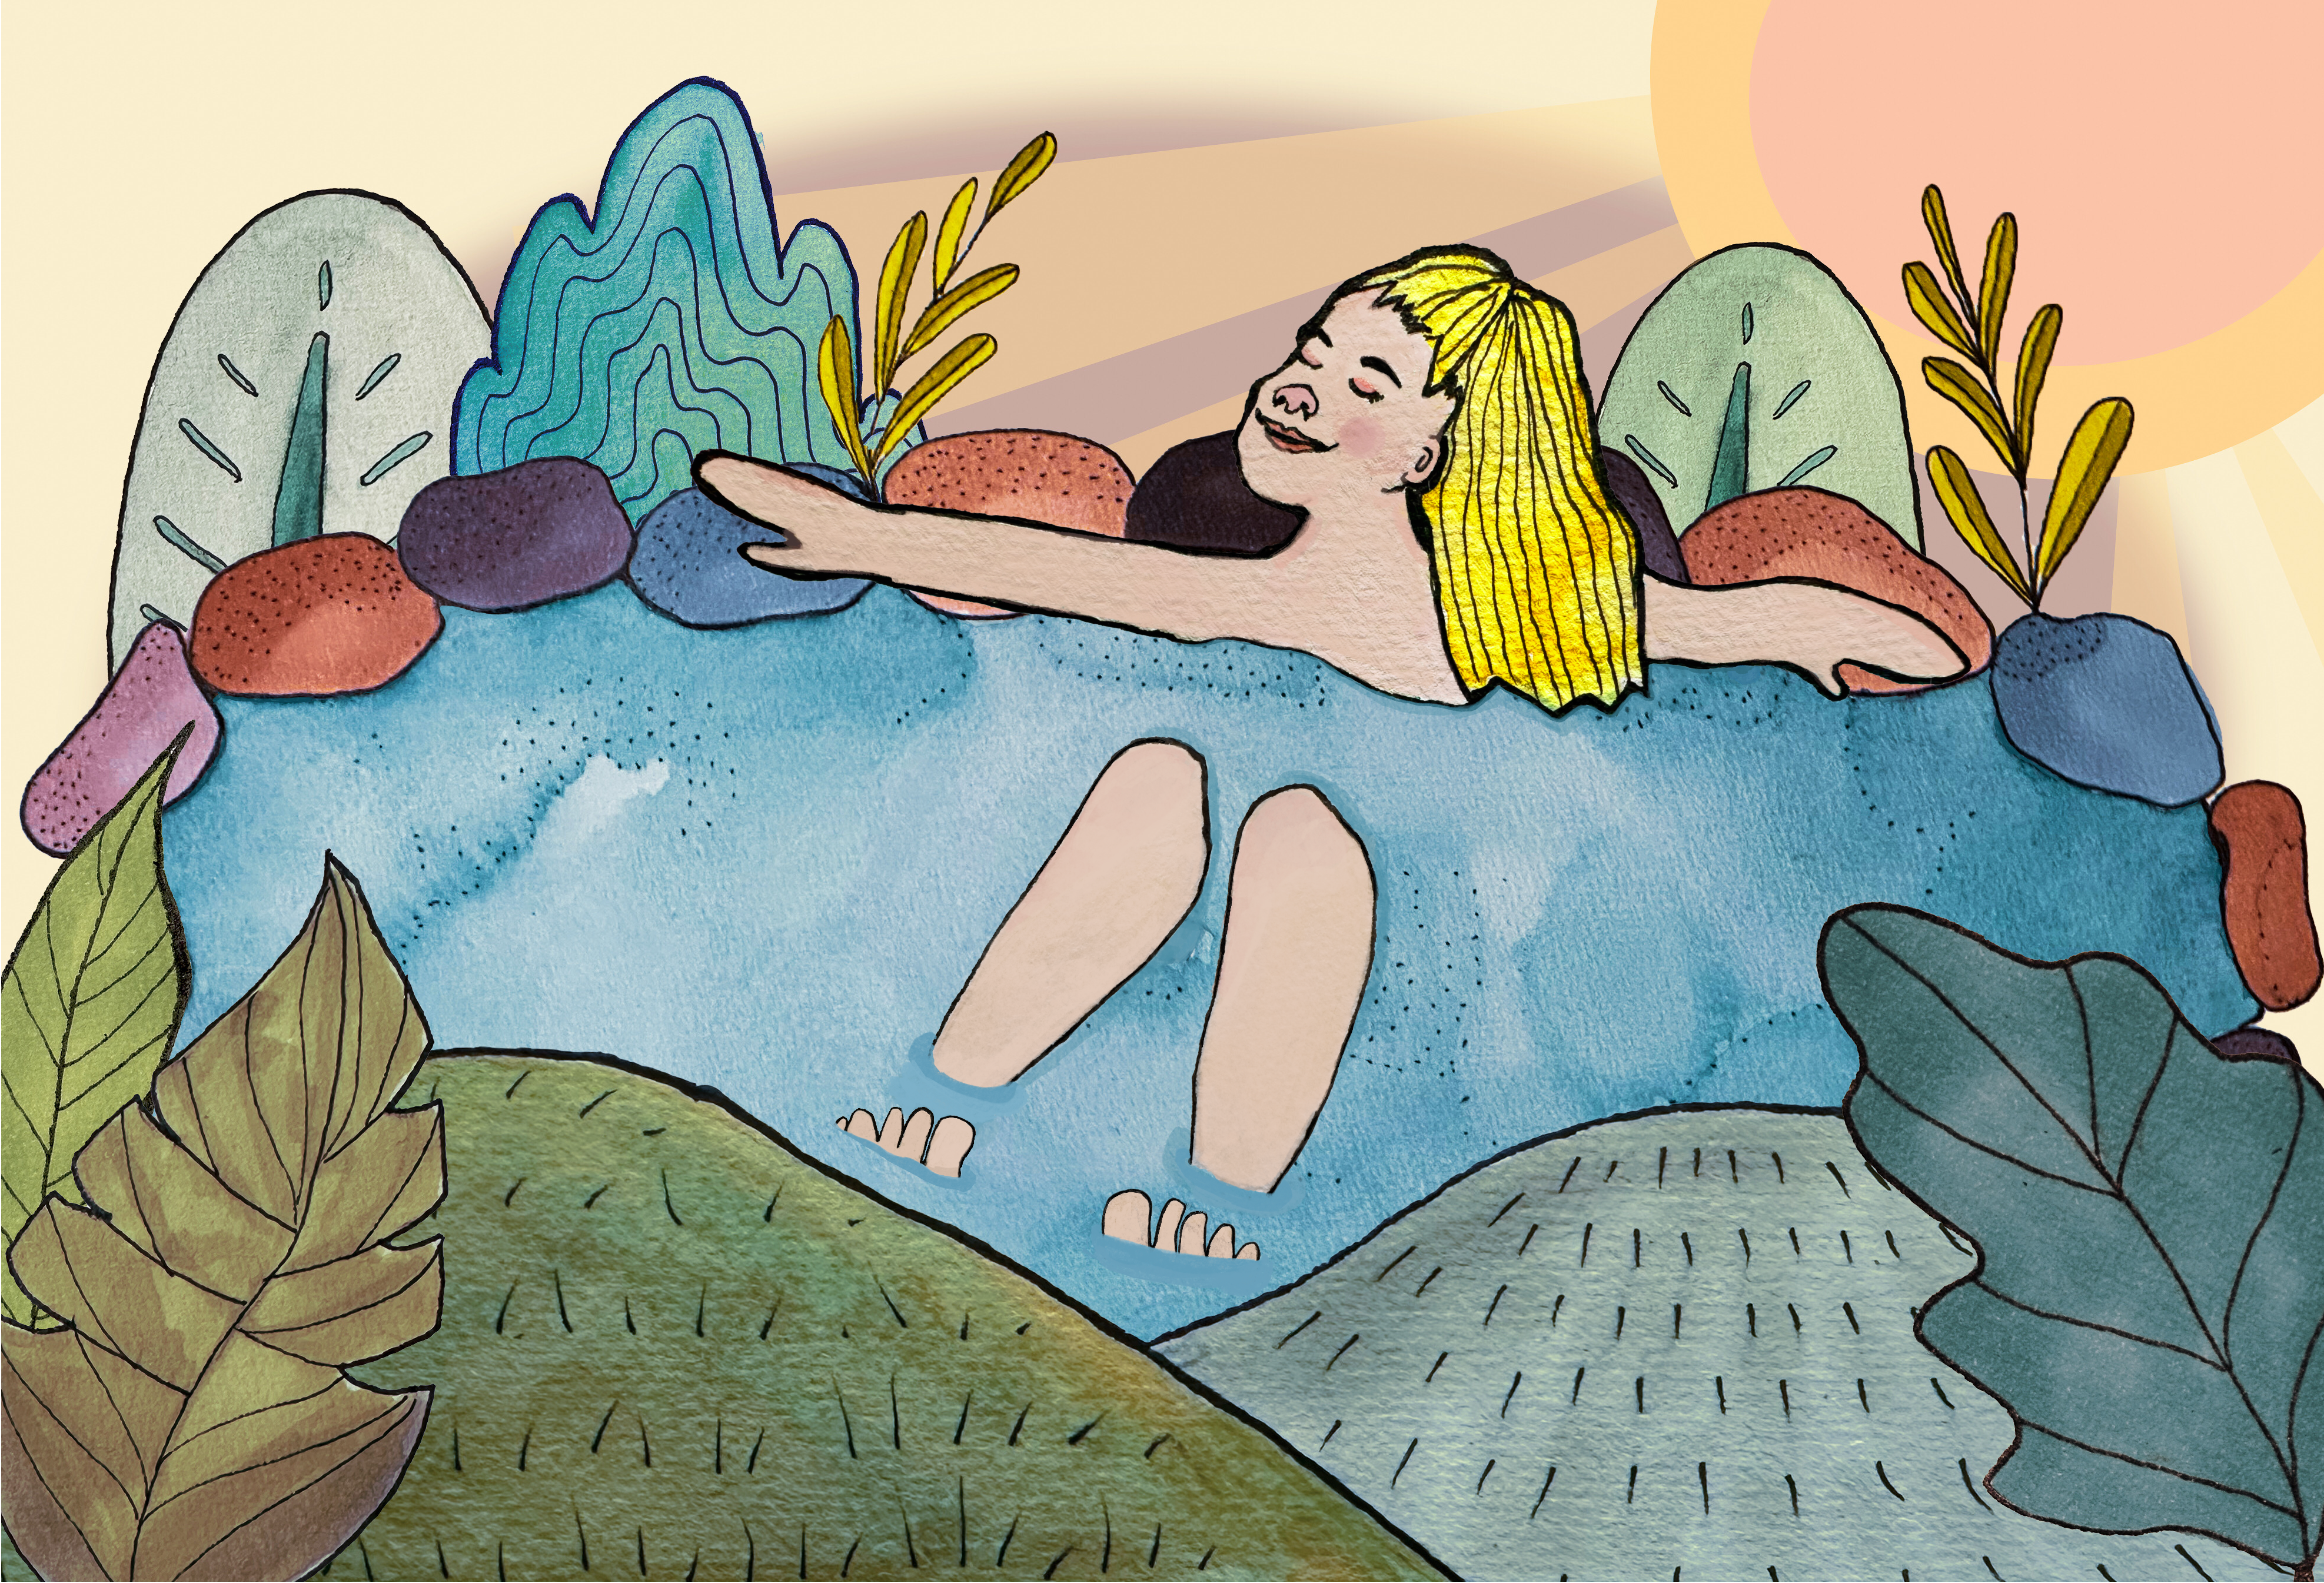 Illustraruib: Hanna sitzt entspannt in einem Teich